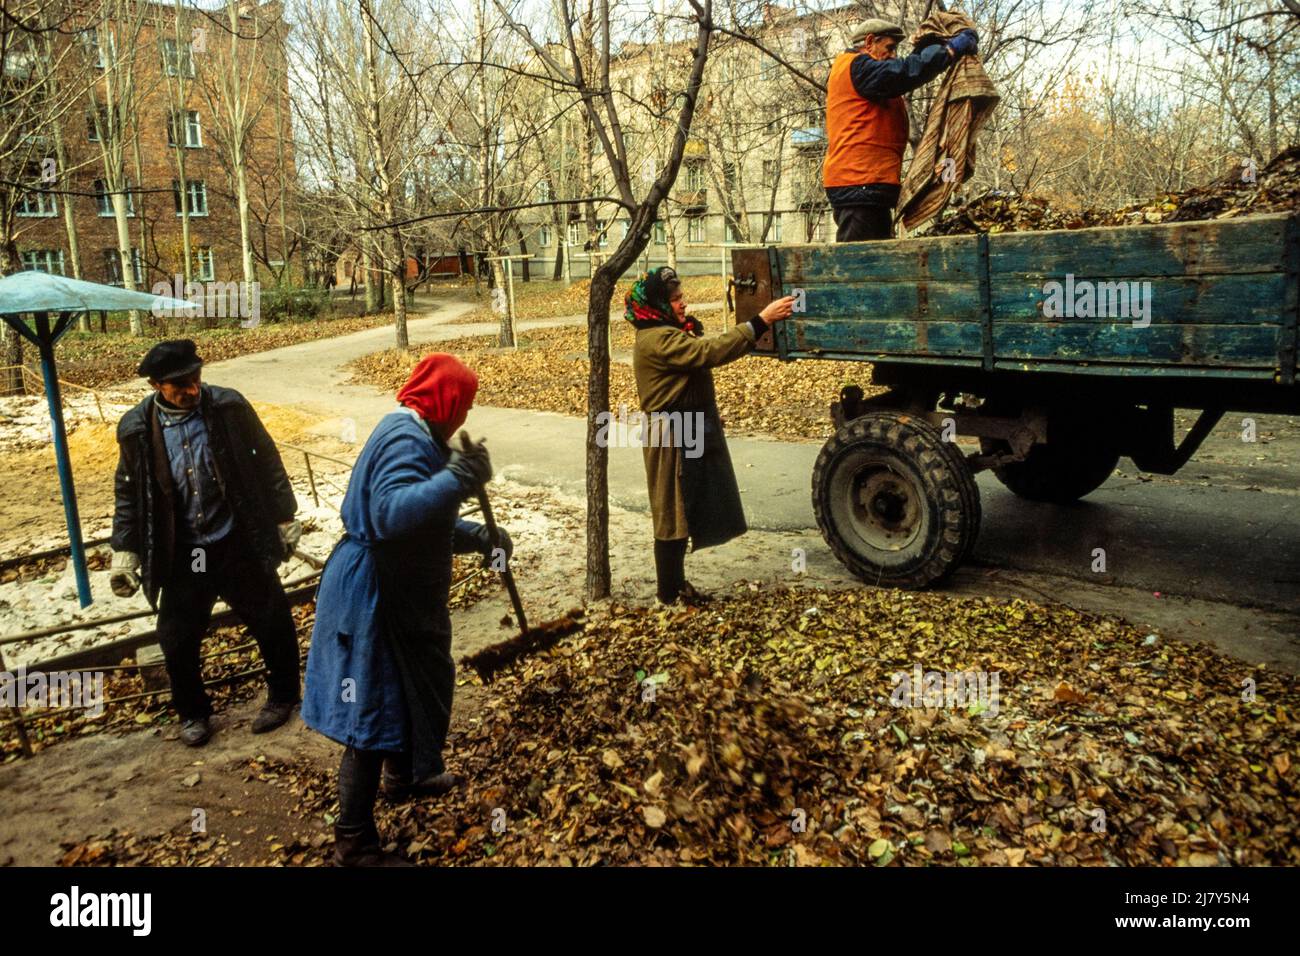 Clearing fallen autumn leaves, Donetsk, Ukraine, November 1989 Stock Photo